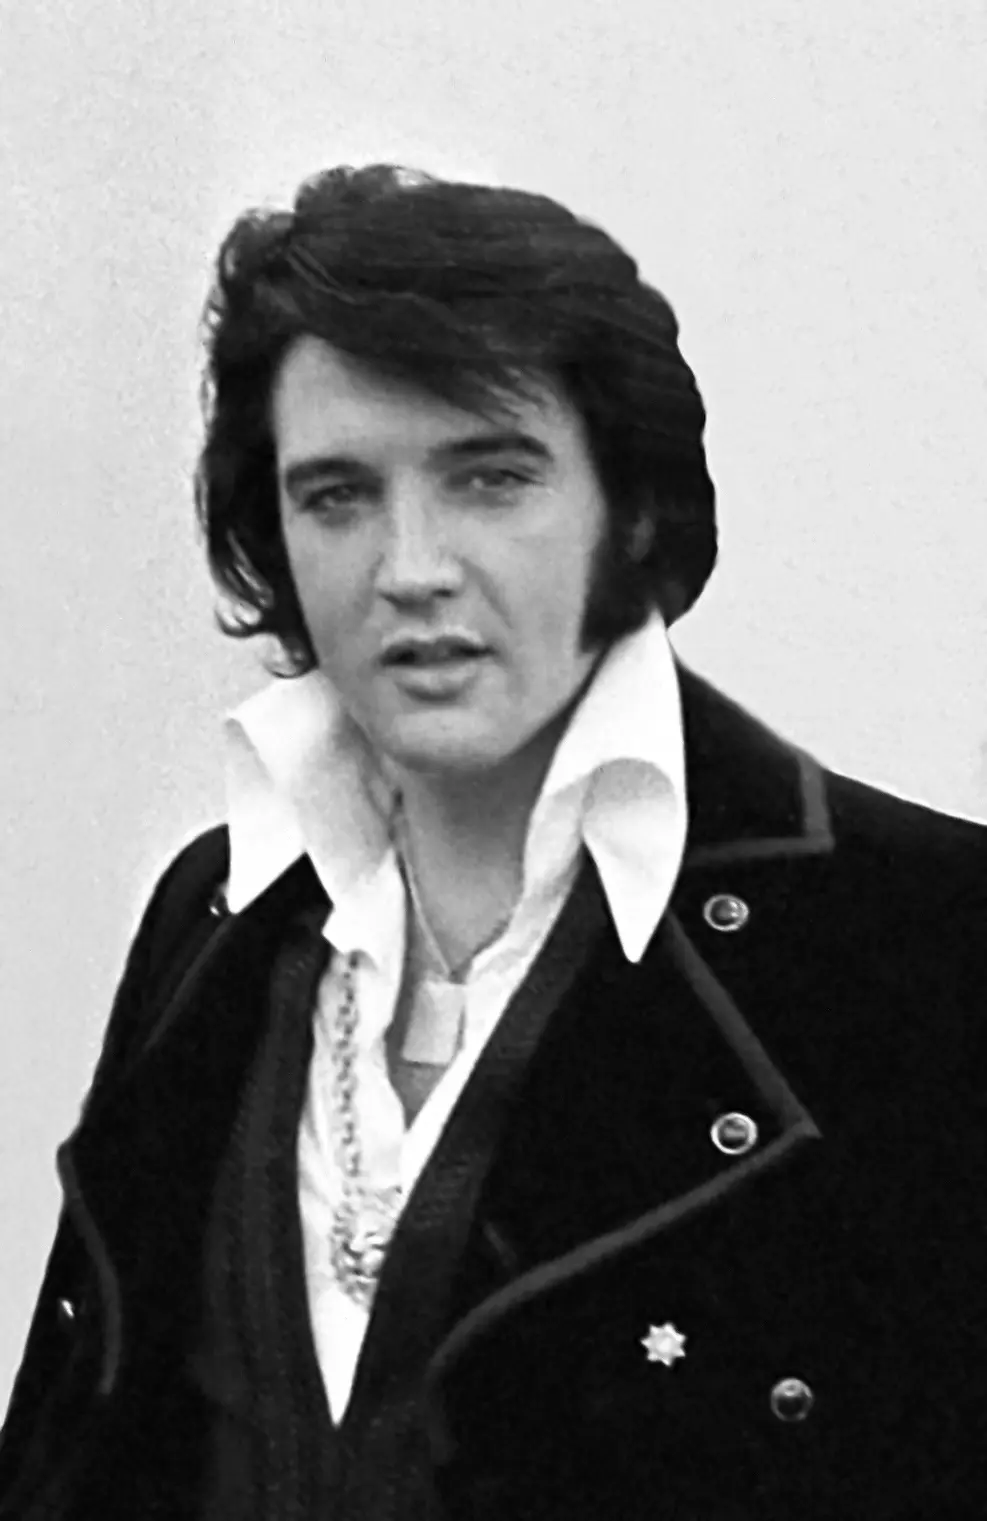 ¿Cómo encontró Elvis Presley su fin?  La verdadera historia de la muerte del Rey del Rock 'n' Roll